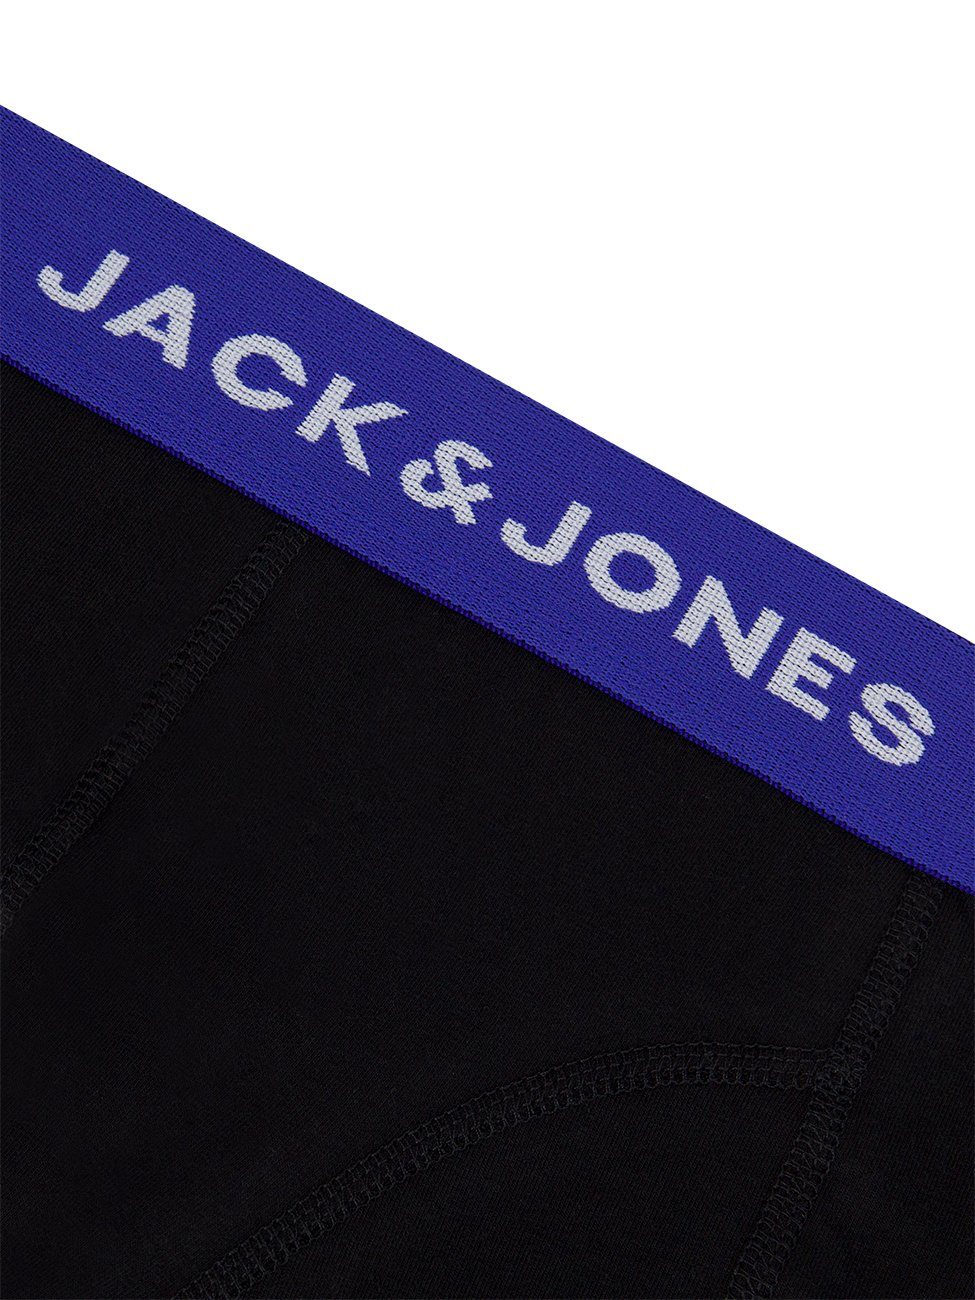 Basic 6er Jack Retroshorts Boxershorts 6-St) 3 Jones Trunks Stretch Unterhosen (Vorteilspack, Pack Herren mit & Pack